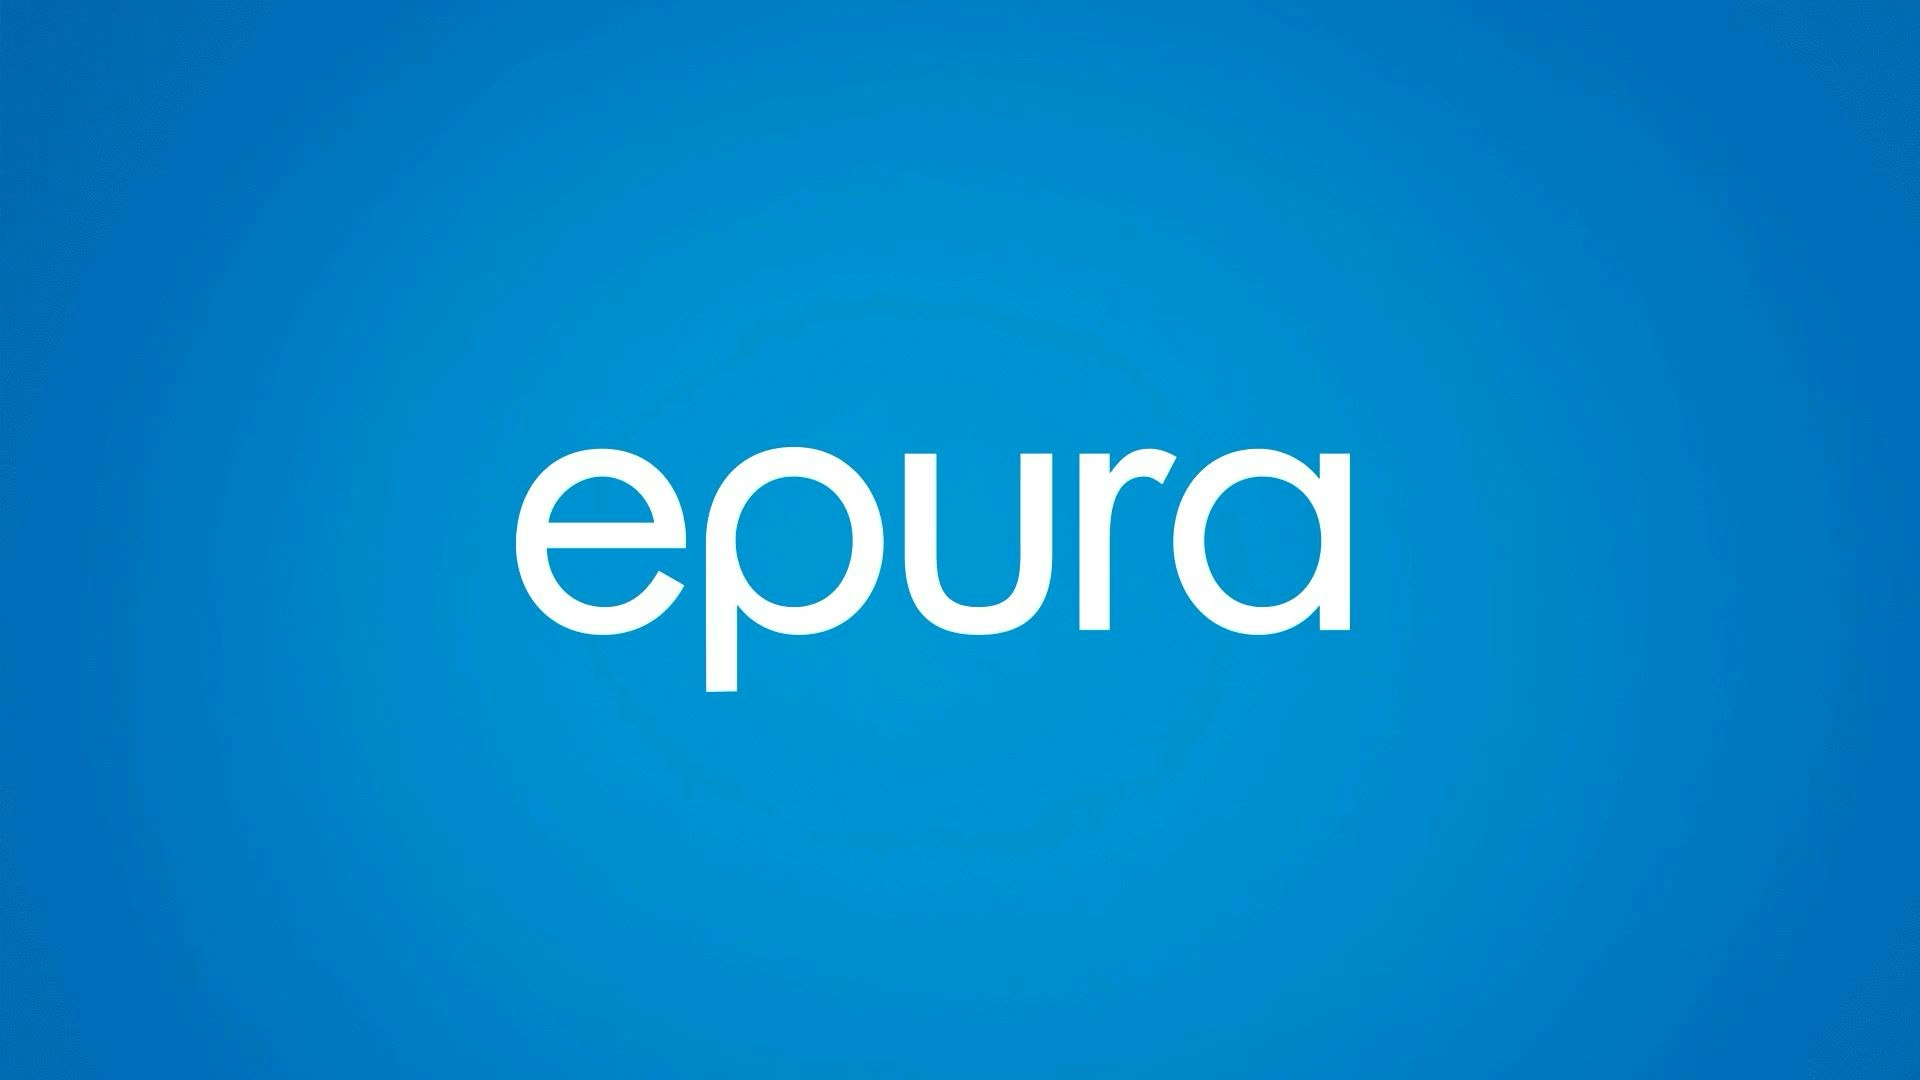 Epura logo with blue background